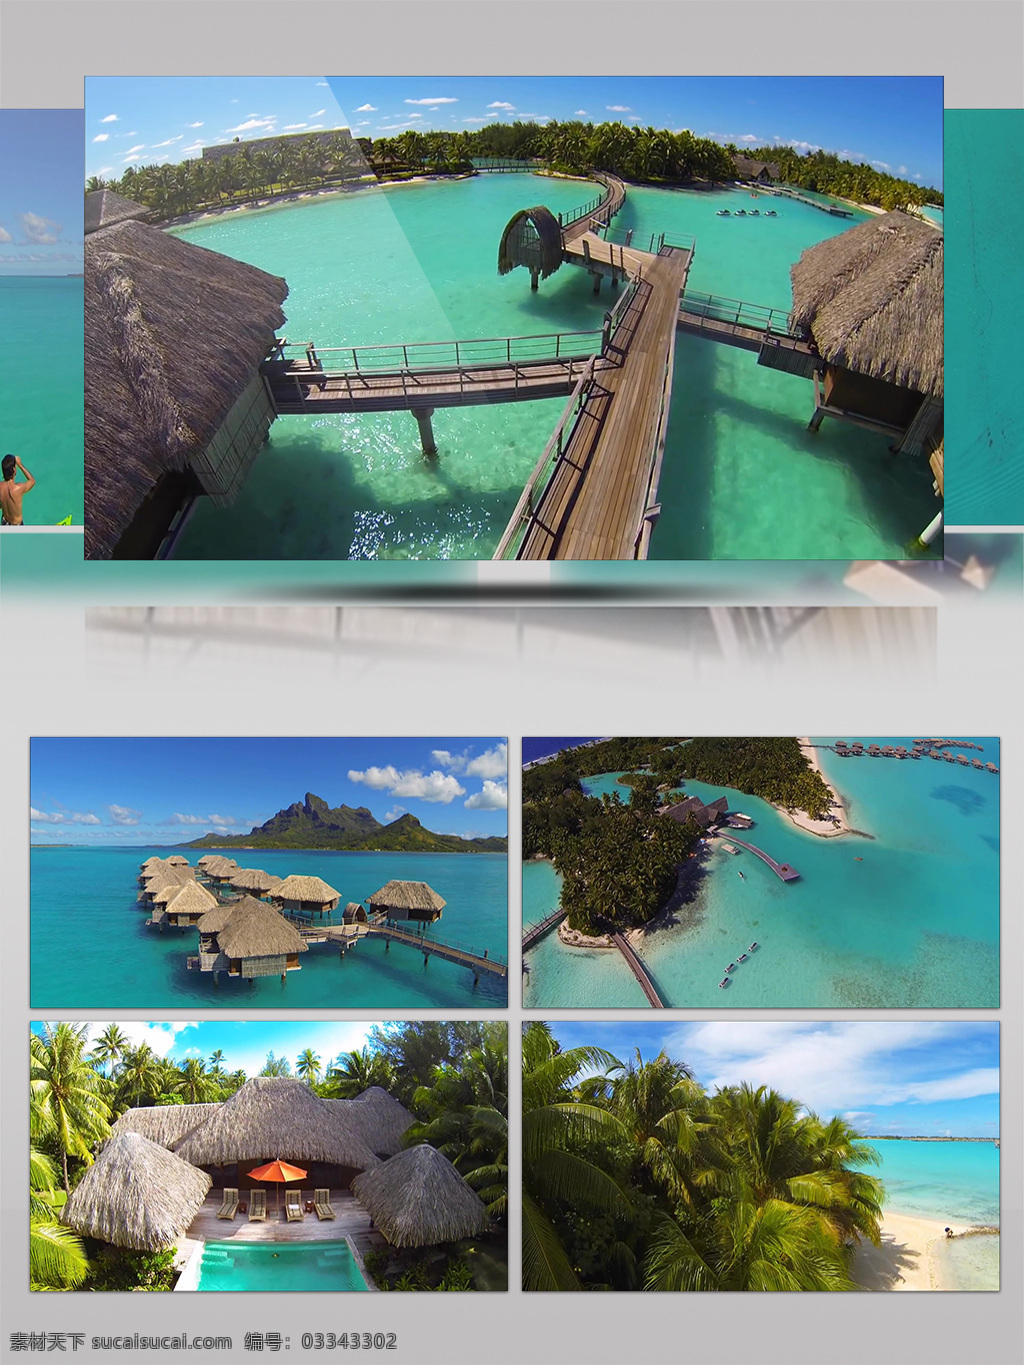 马尔代夫 夏季 海景 度假 潜水 旅游 沙滩 阳光 休闲 自然风光